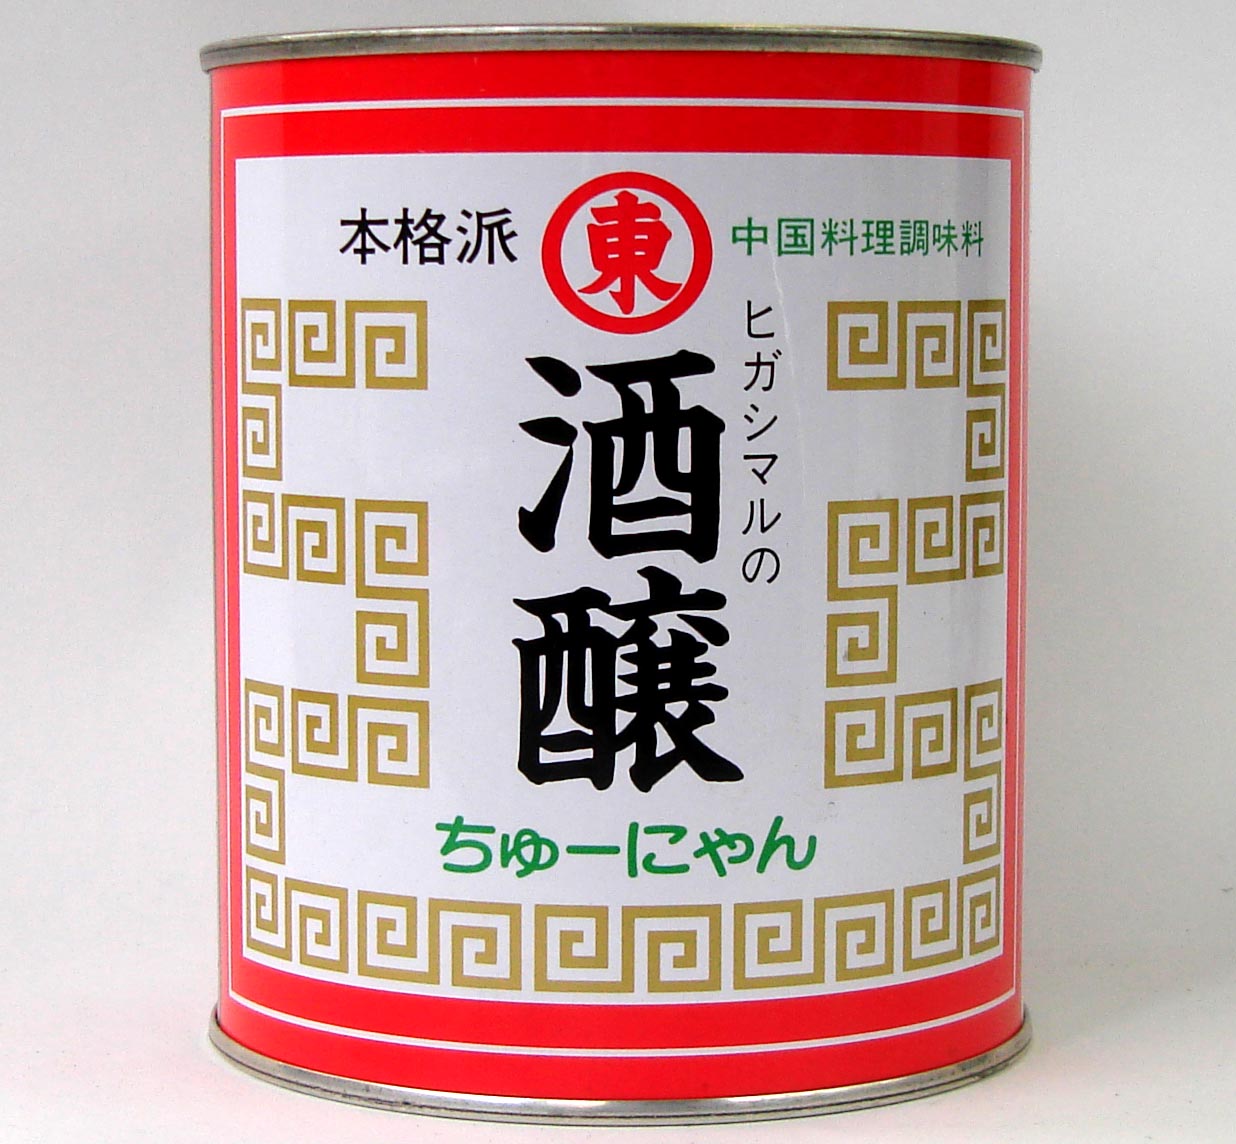 【まとめ買い】ヒガシマル 酒醸 (チューニャン ちゅーにゃん) 900g x12缶 (ケース)